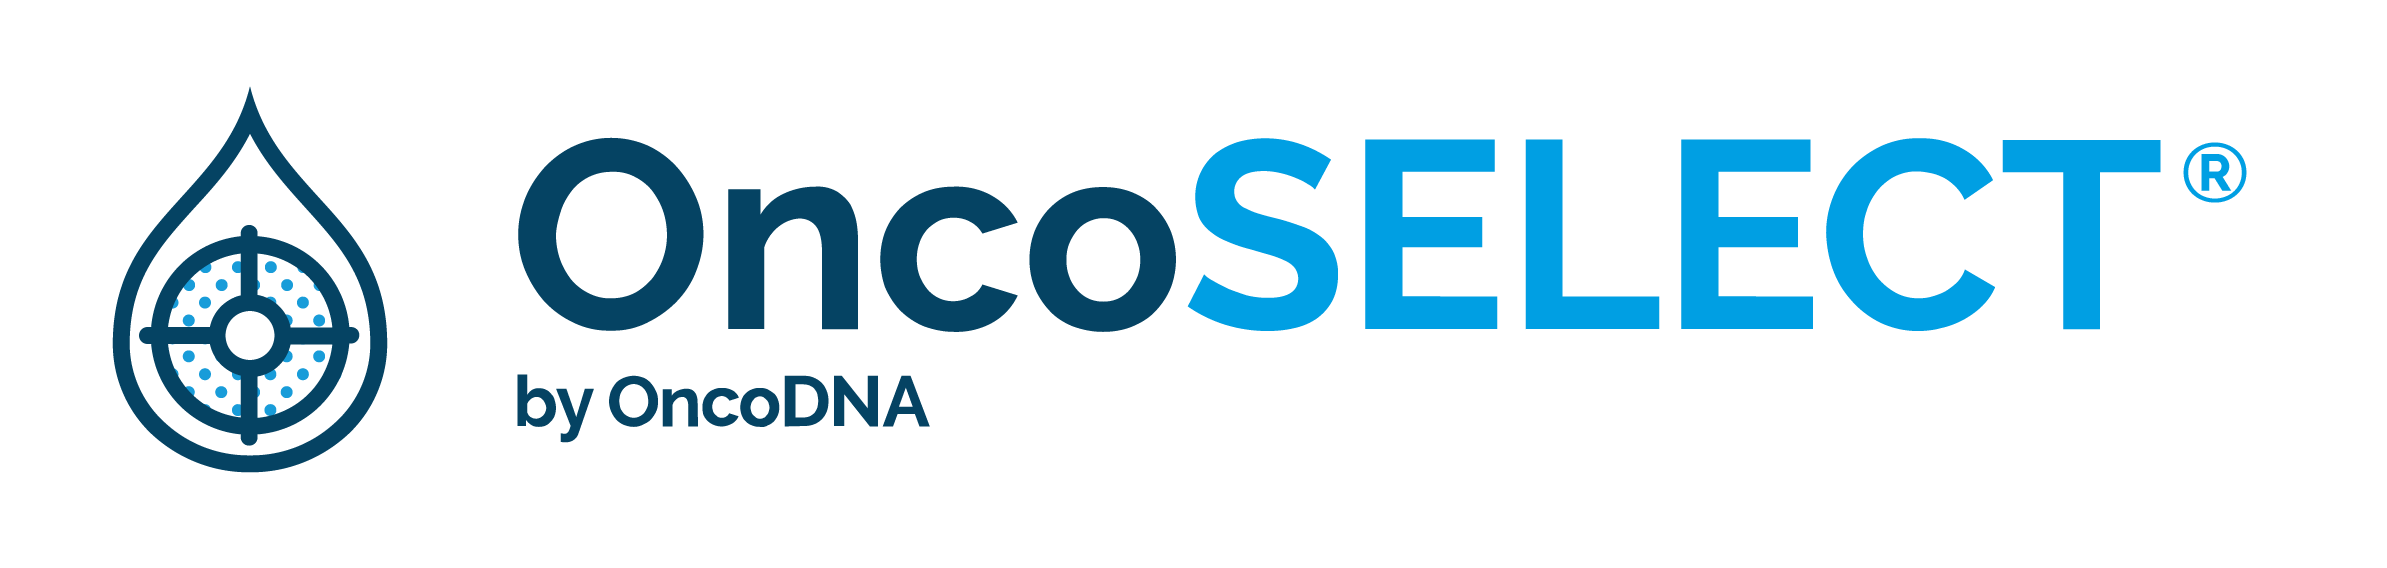 OncoSELECT logo